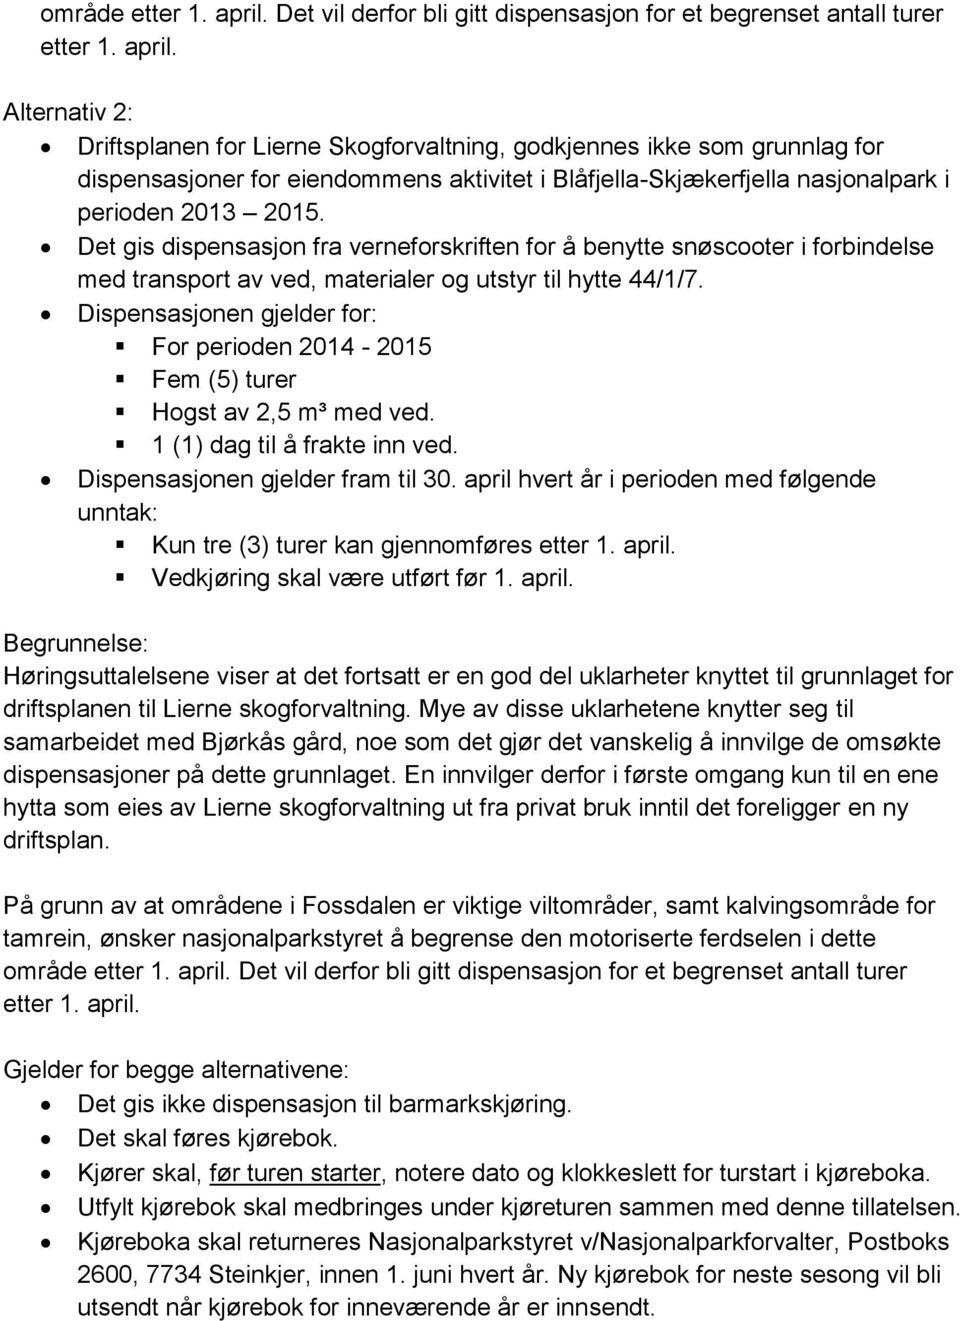 Alternativ 2: Driftsplanen for Lierne Skogforvaltning, godkjennes ikke som grunnlag for dispensasjoner for eiendommens aktivitet i Blåfjella-Skjækerfjella nasjonalpark i perioden 2013 2015.